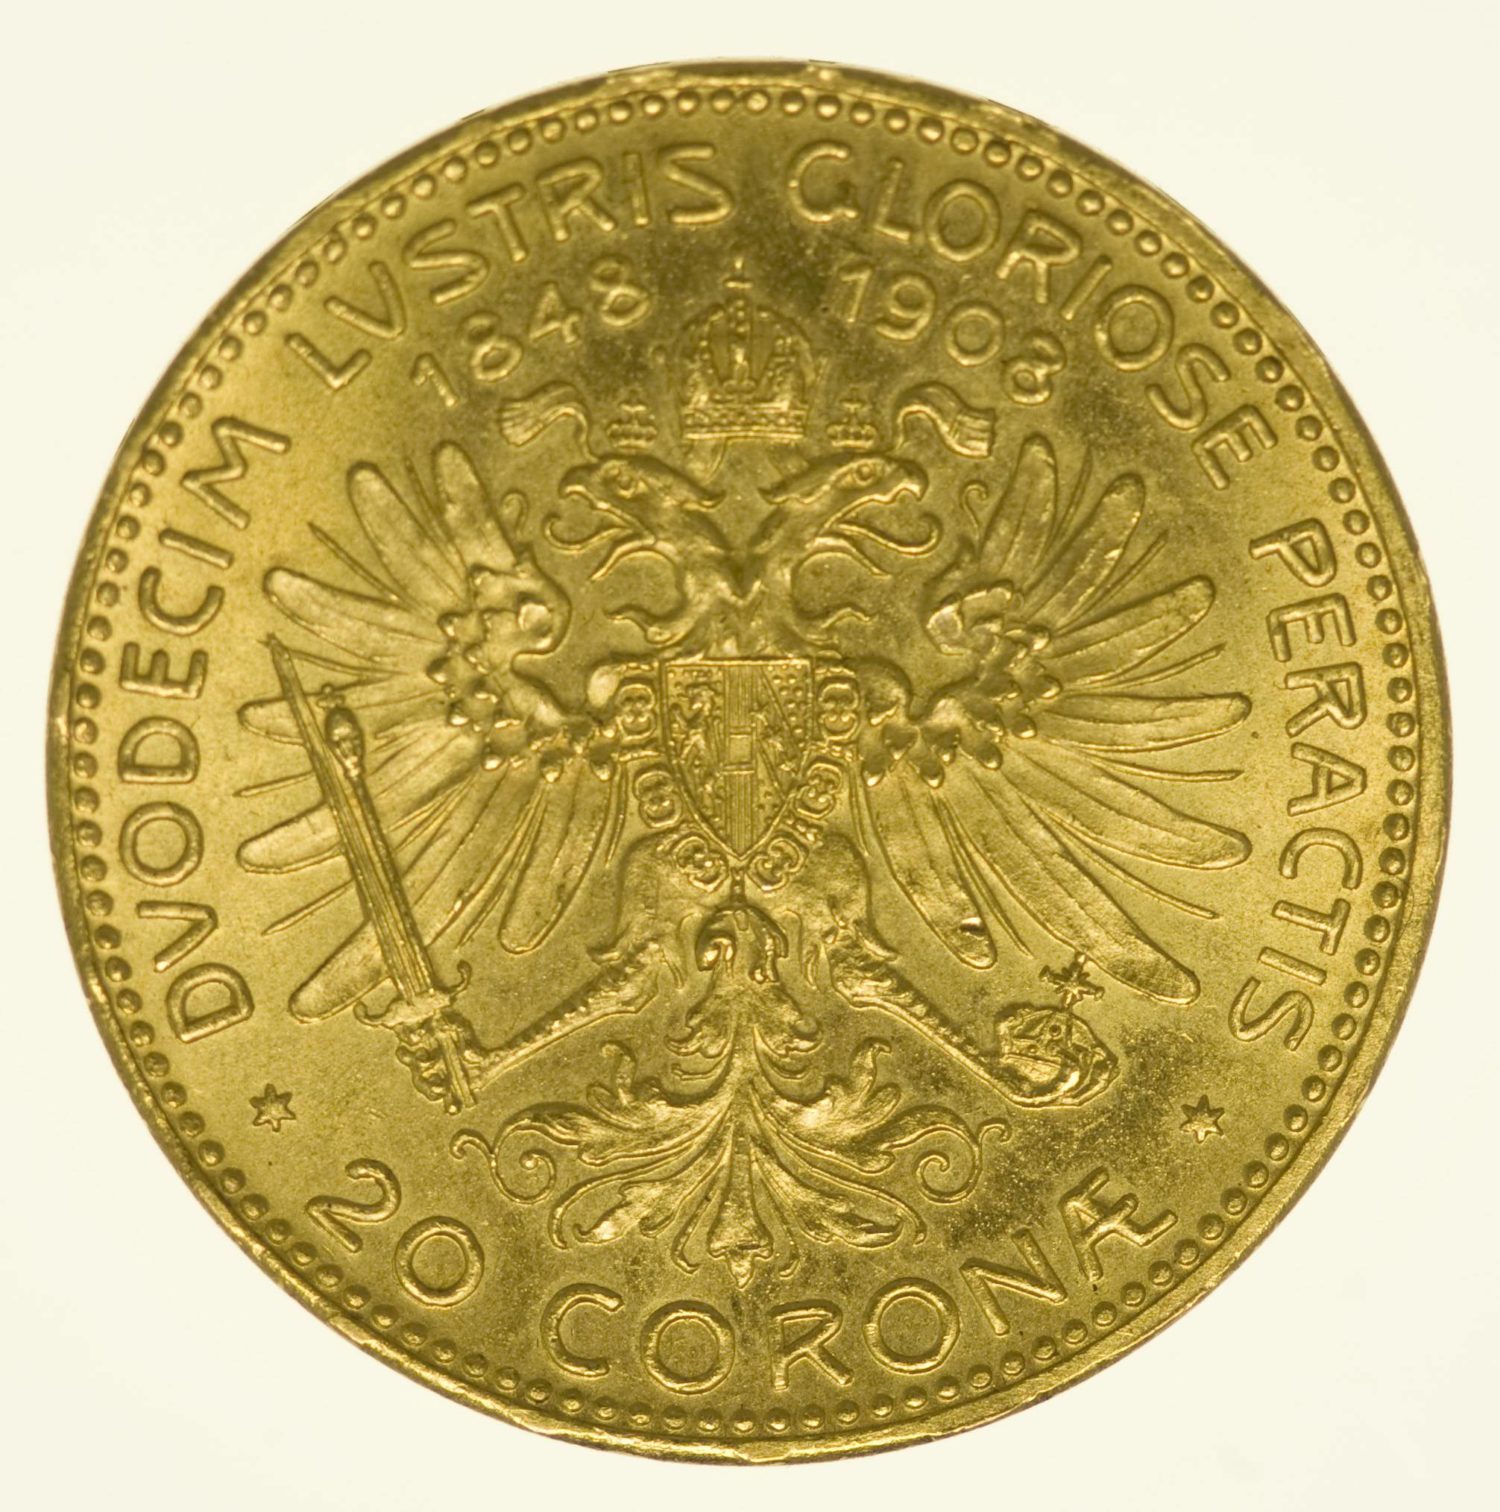 Kaiserreich Österreich Franz Joseph I. 20 Kronen 1908 Gold 6,09g fein RAR